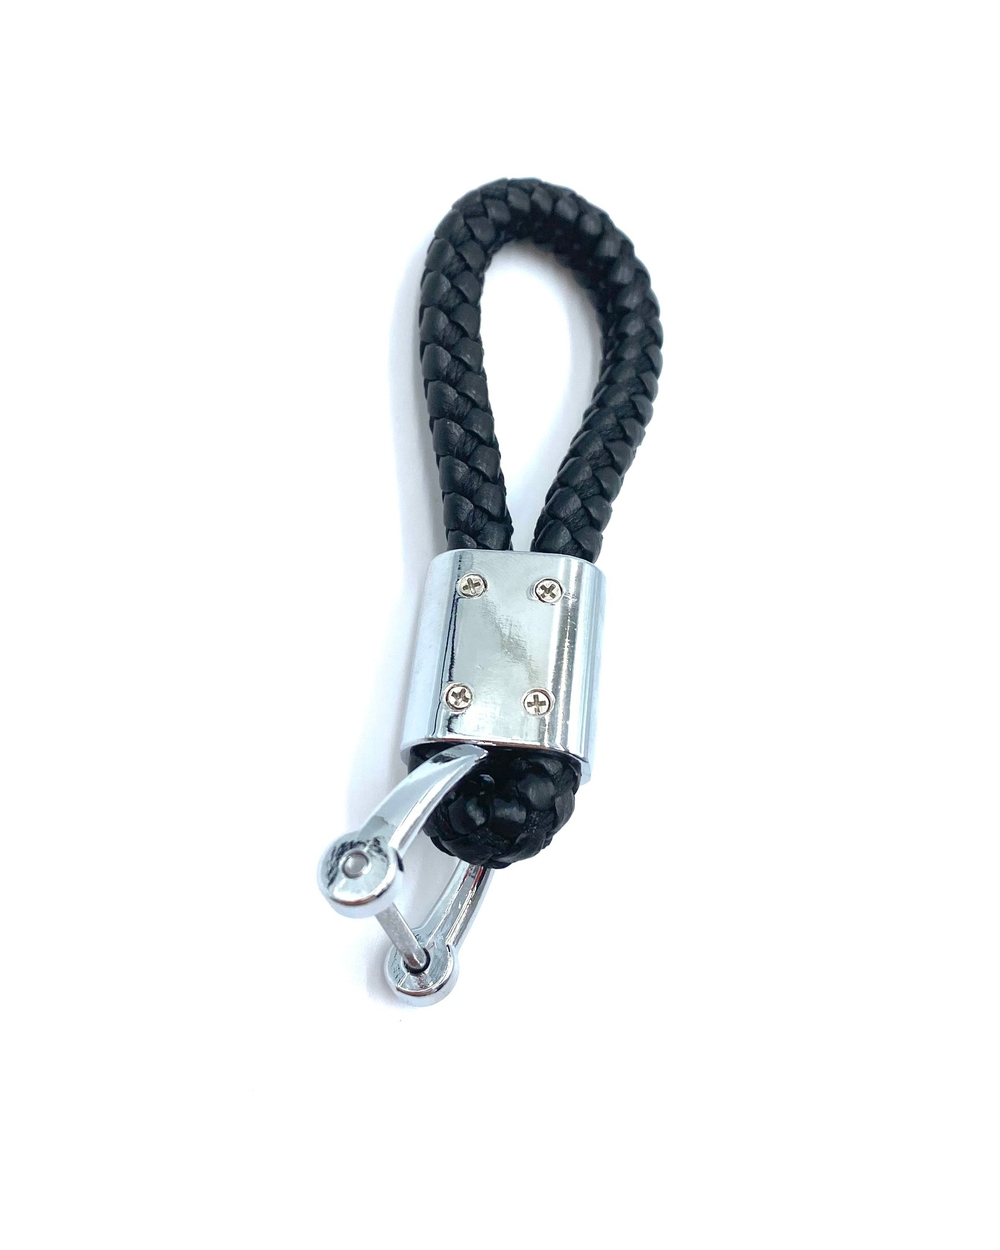 Брелок для ключей кожаный с эмблемой Mercedes с карабином  (кожзам, косичка, черный цвет)